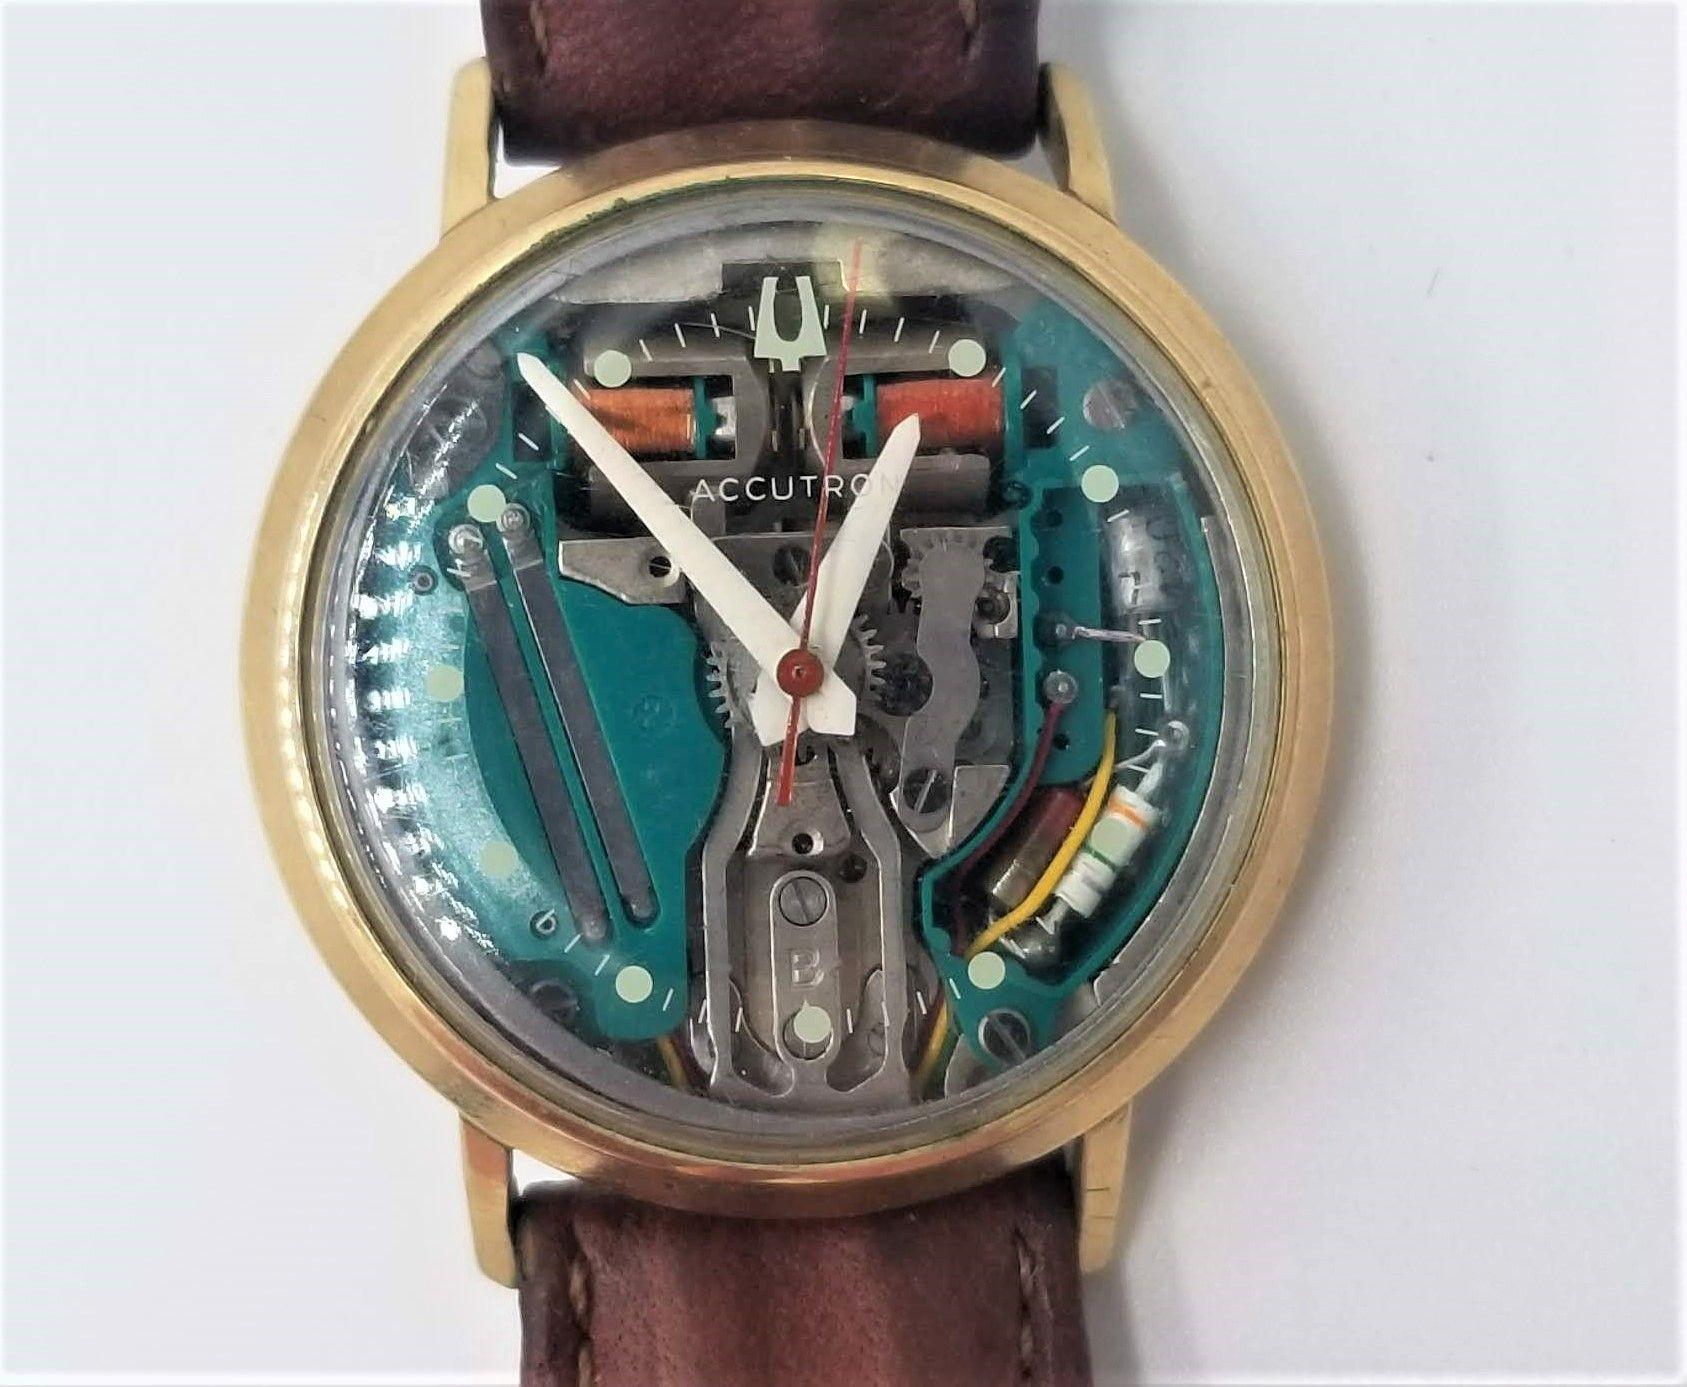 Die Accutron 214 Spaceview Armbanduhr für Herren aus dem Jahr 1965 war ein revolutionärer Zeitmesser mit modernster Stimmgabeltechnologie, der einen neuen Standard für die Genauigkeit von Bulova-Uhren in der Branche setzte.

Die Spaceview-Armbanduhr